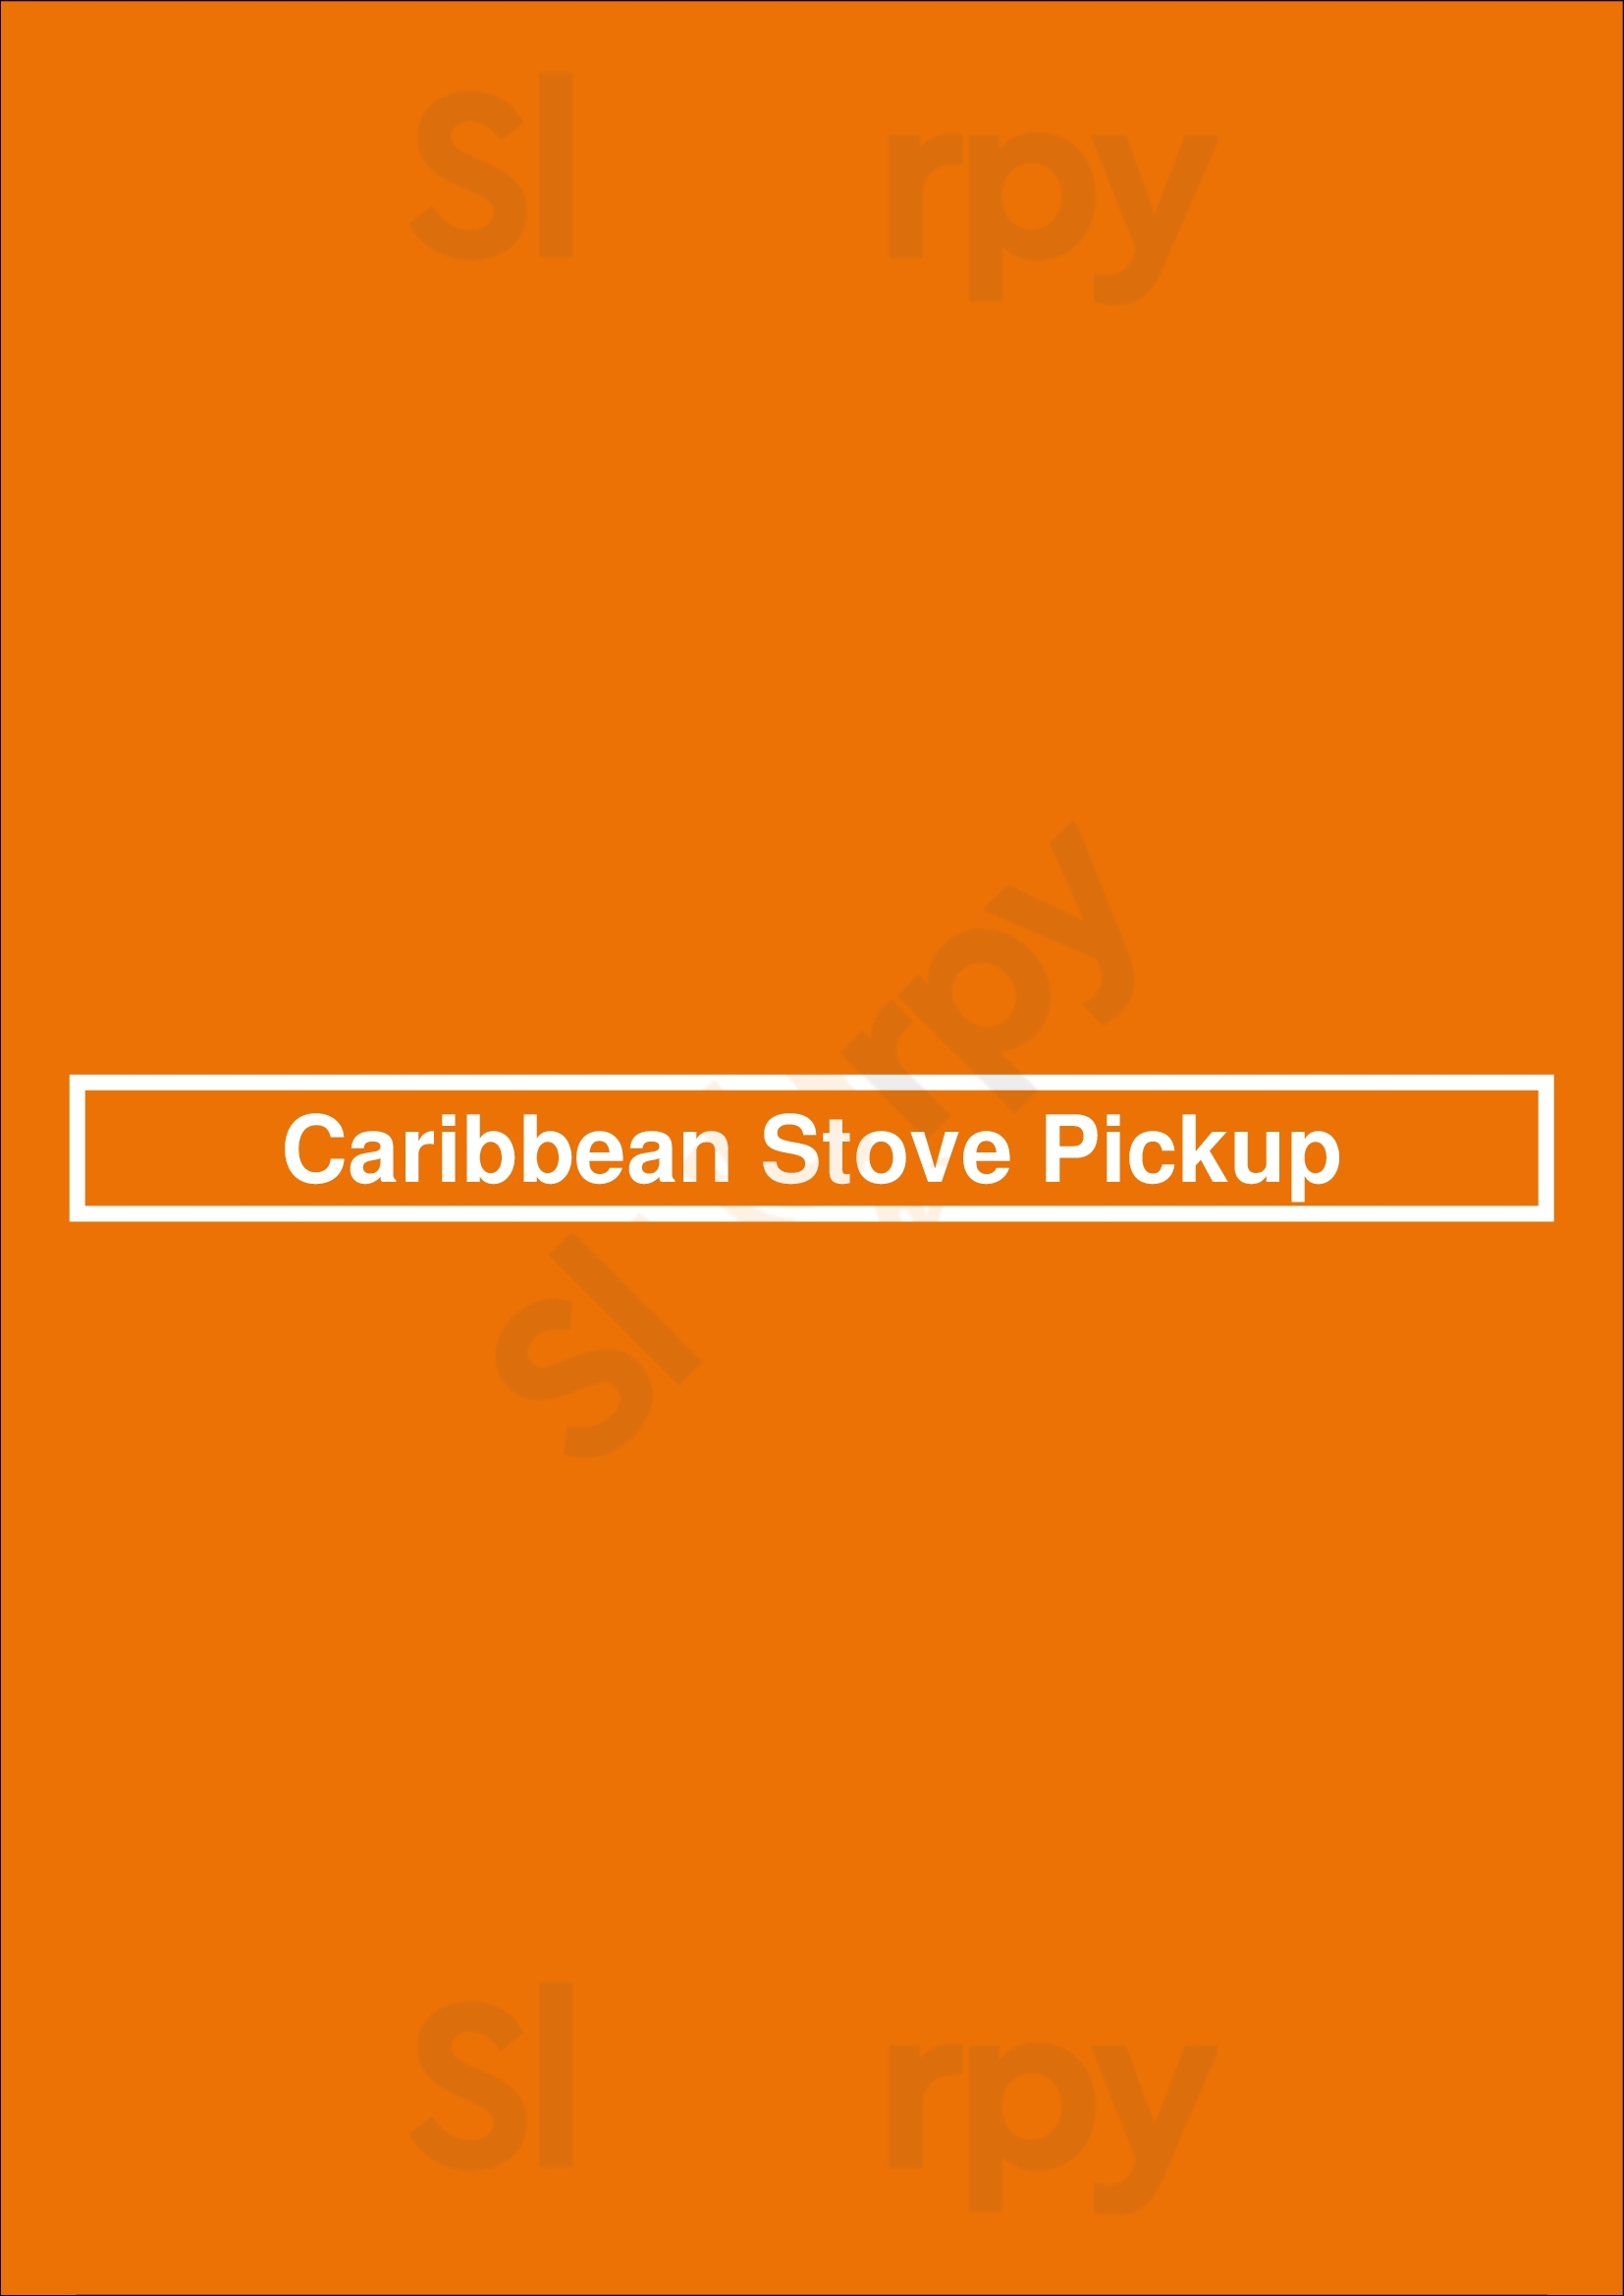 Caribbean Stove Pickup London Menu - 1